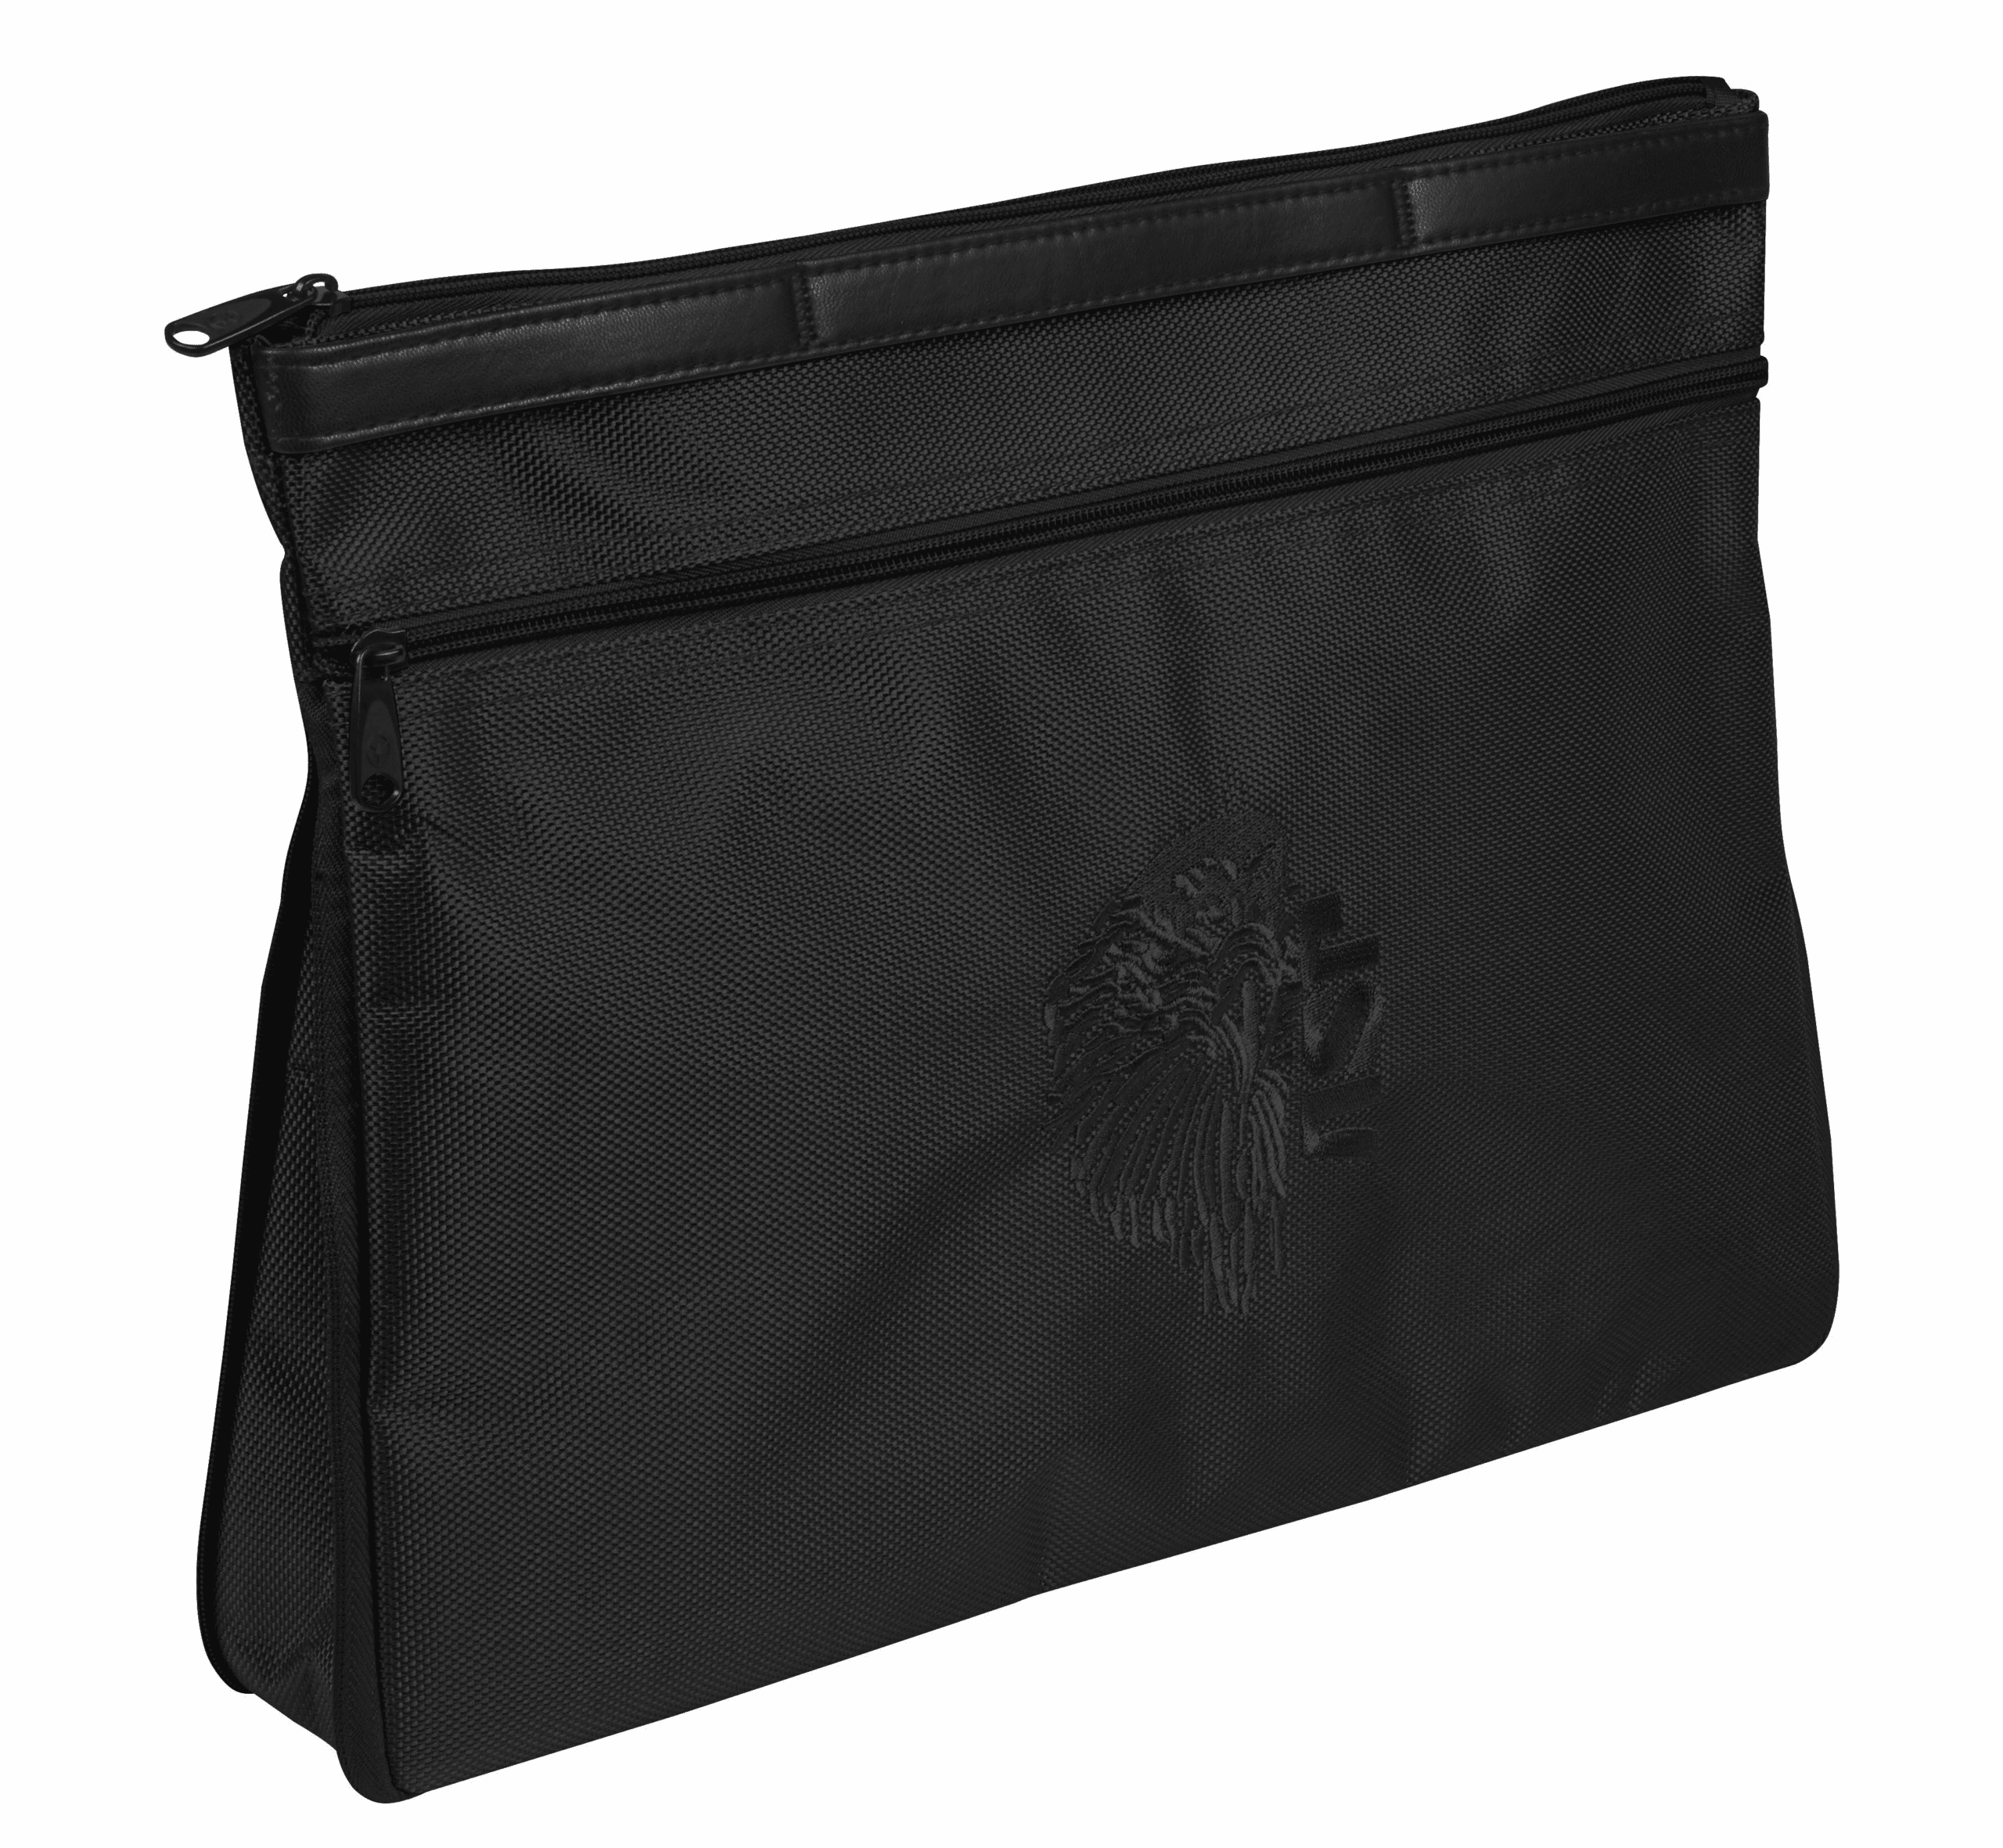 ASP Centurion Envelope Bag - Black, L